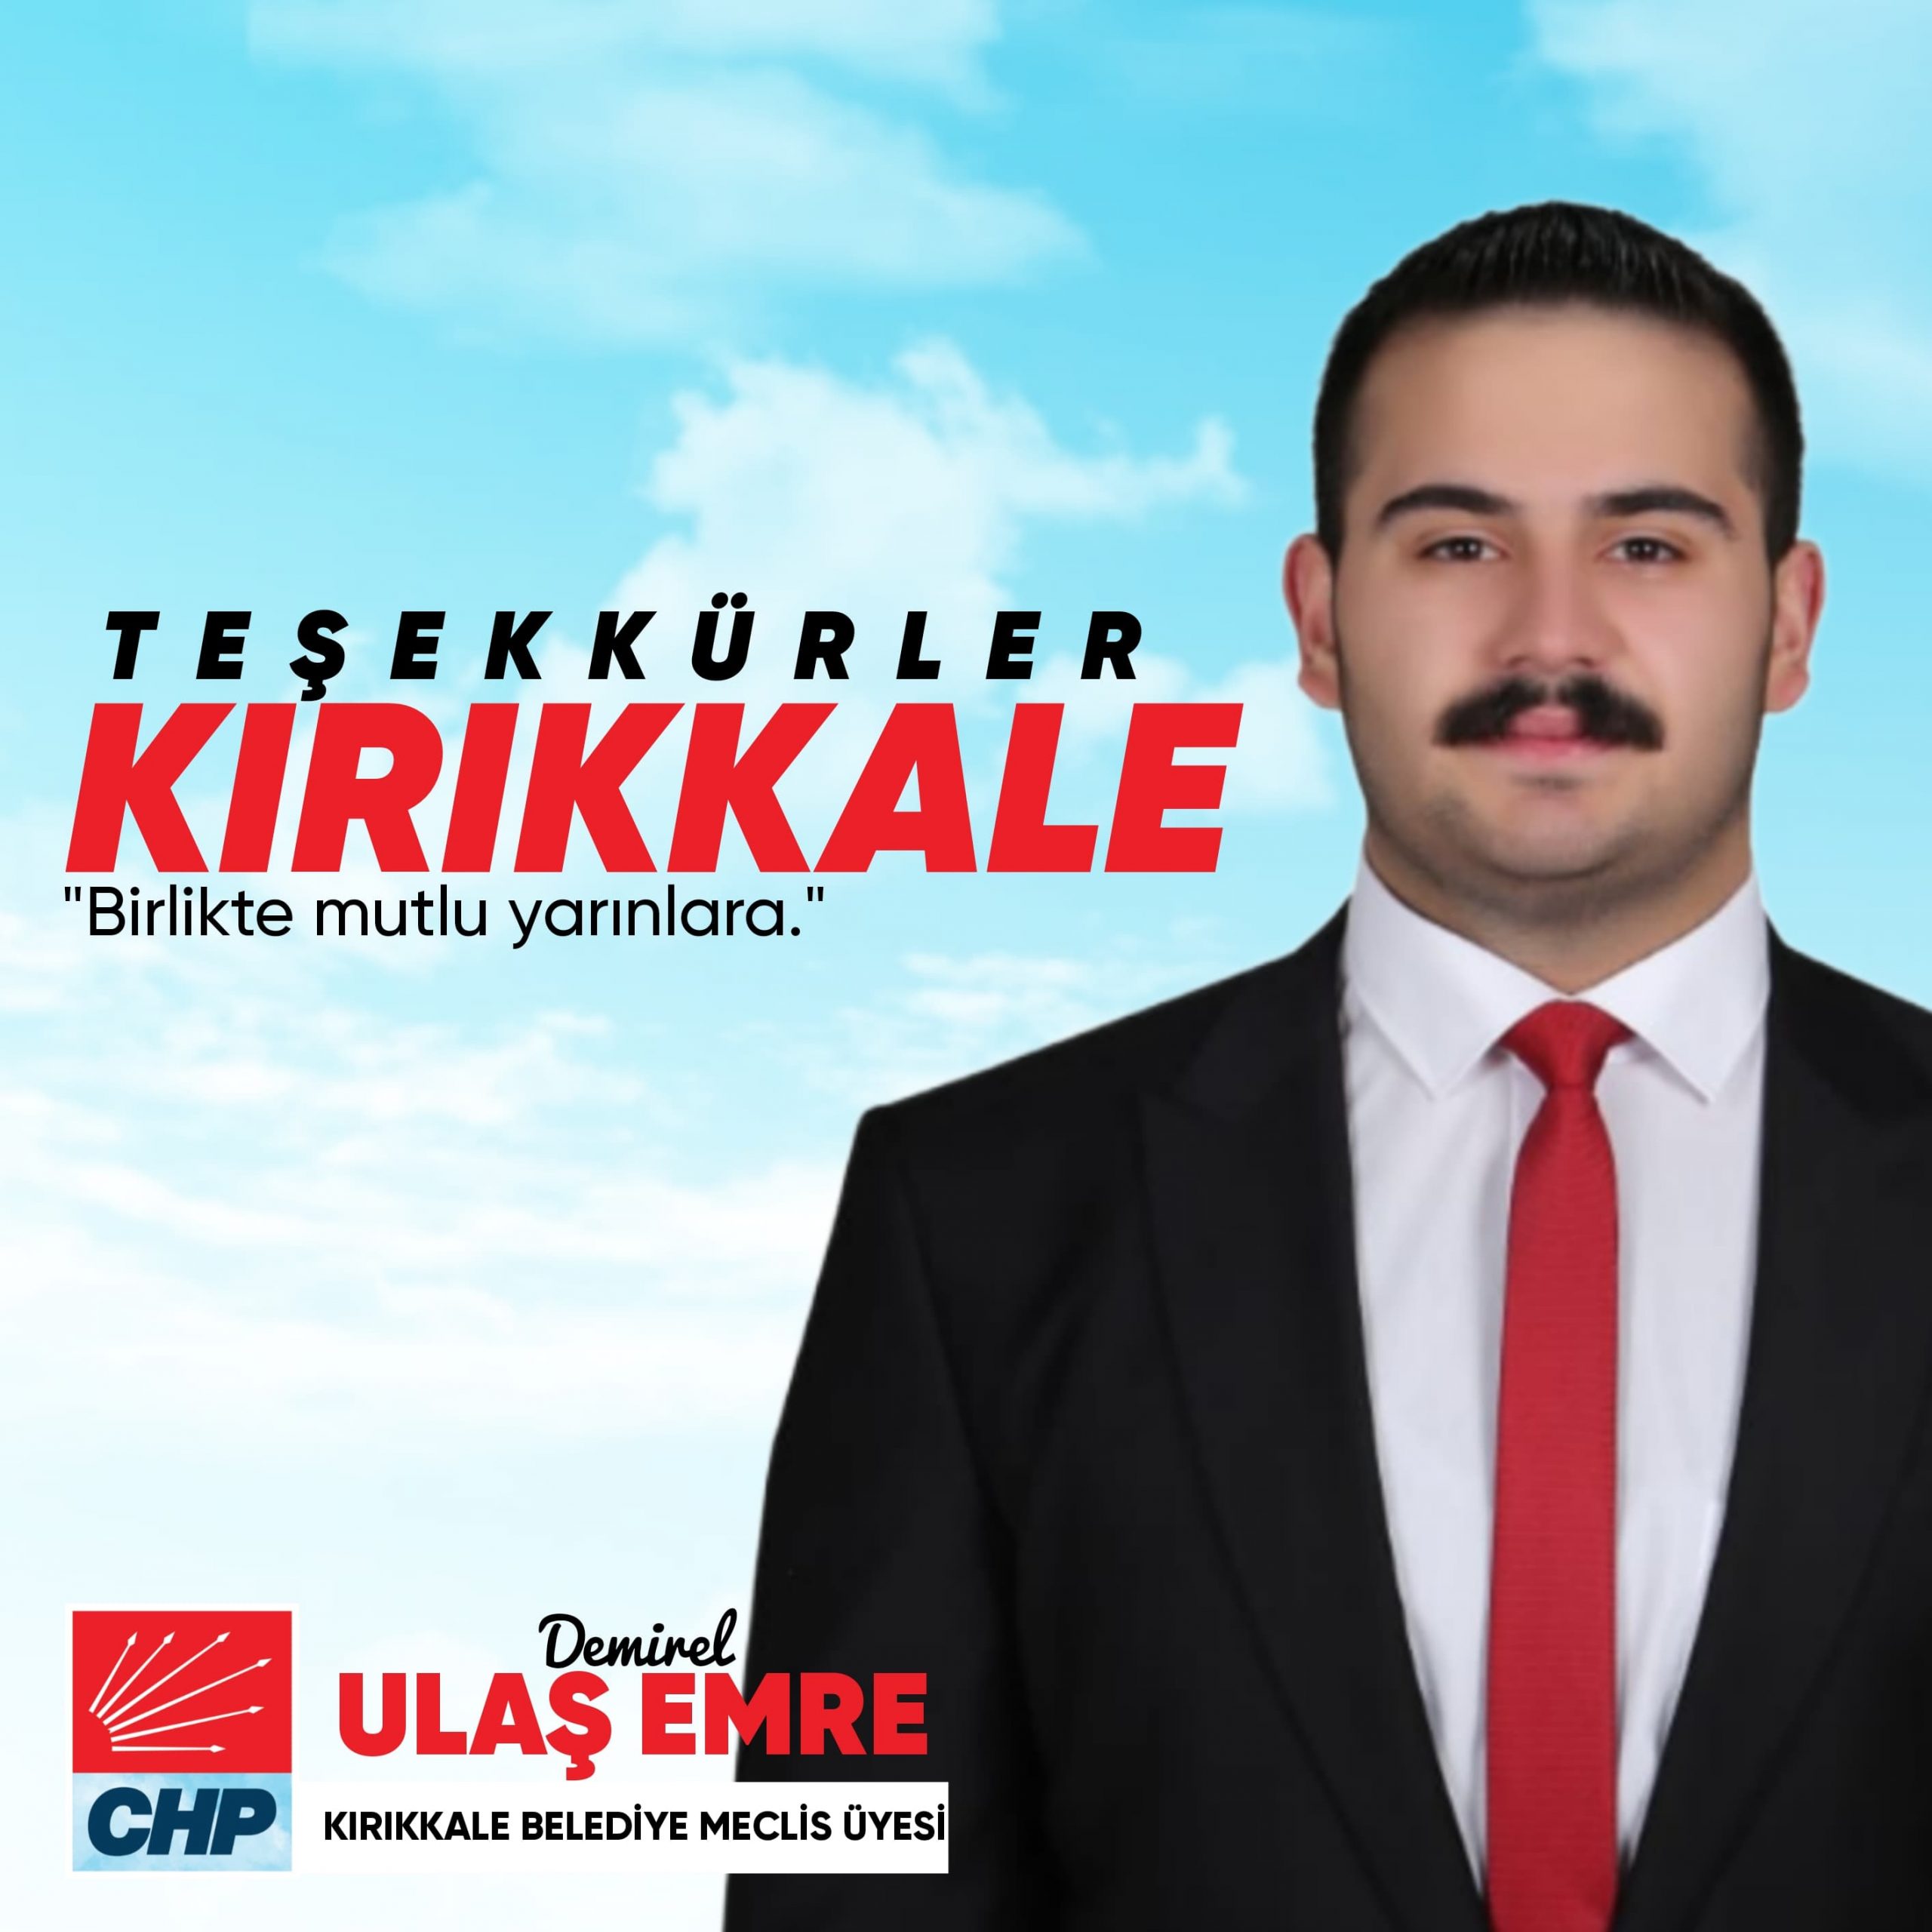 ulas-emre-demirel-scaled Türkiye'nin En Genç Erkek Belediye Meclis Üyesi Kırıkkale'de